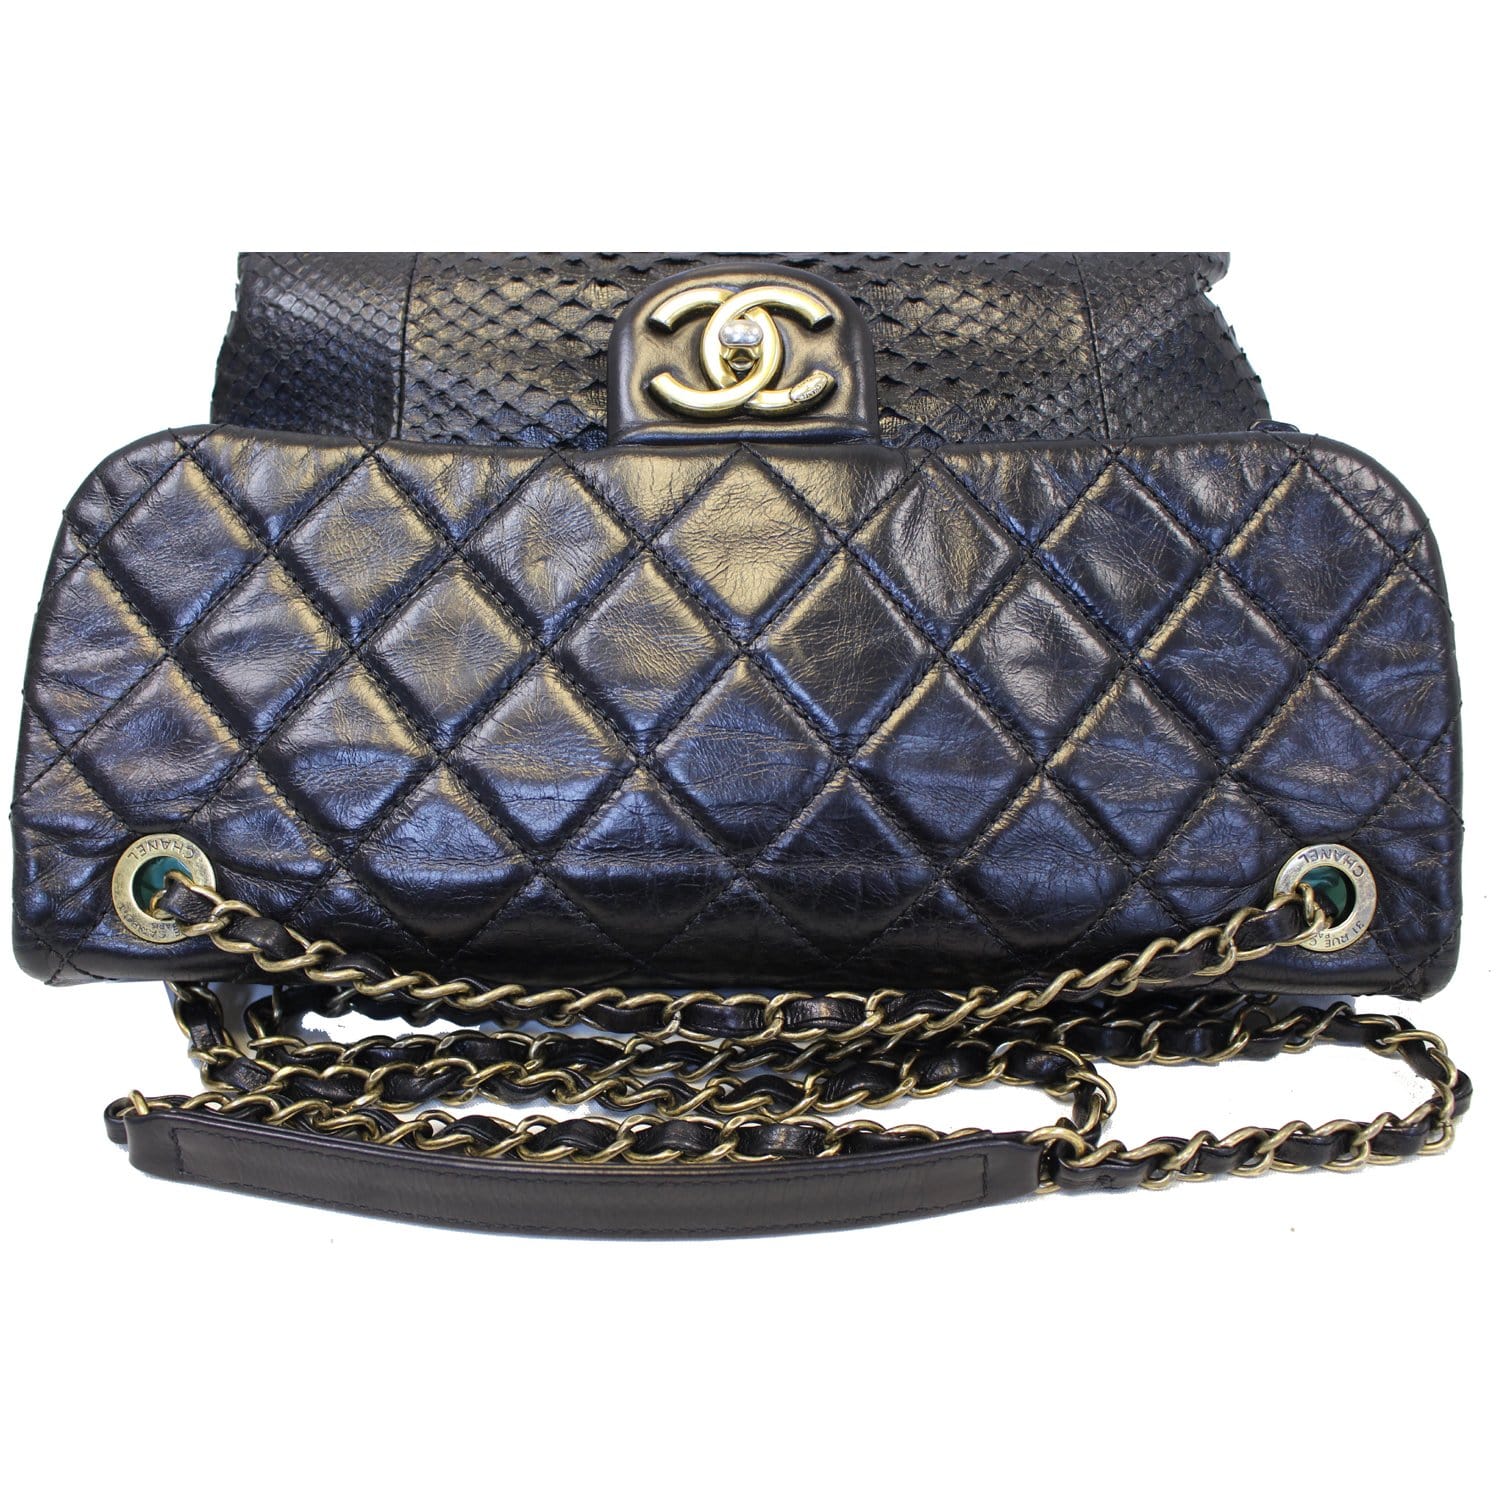 Chanel Urban Mix Flap Calfskin Python Shoulder Bag Black